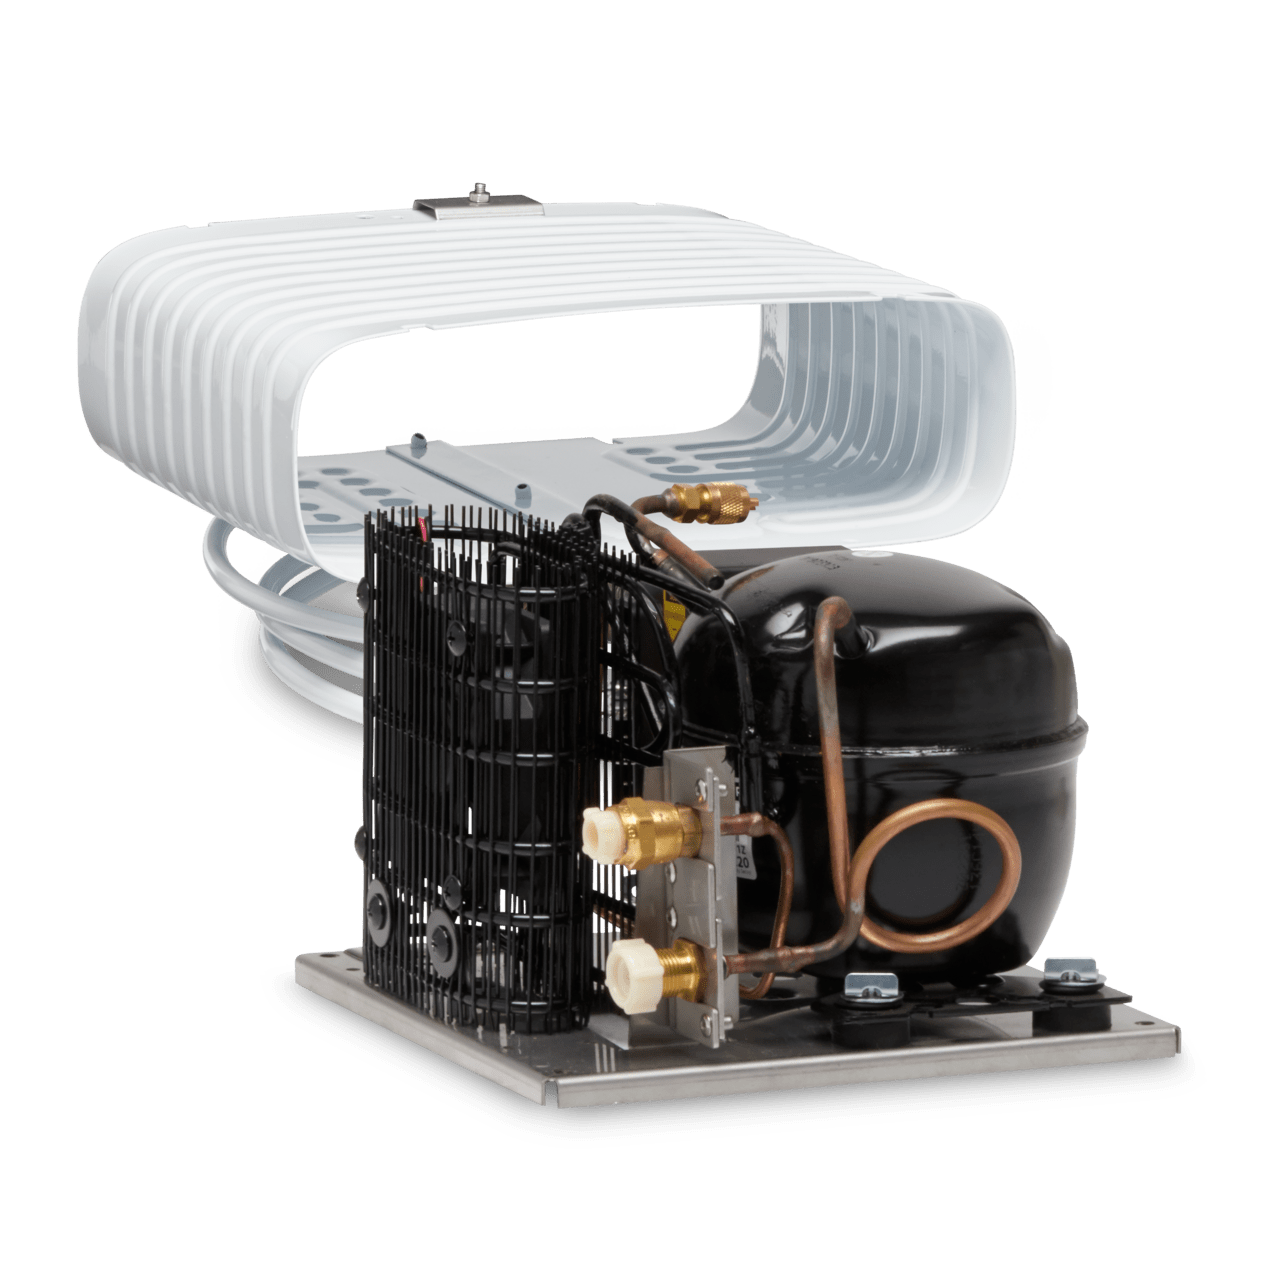 Dometic CoolMatic CRX 50S Kompressor-Kühlschrank, Edelstahl-Front, Version  2